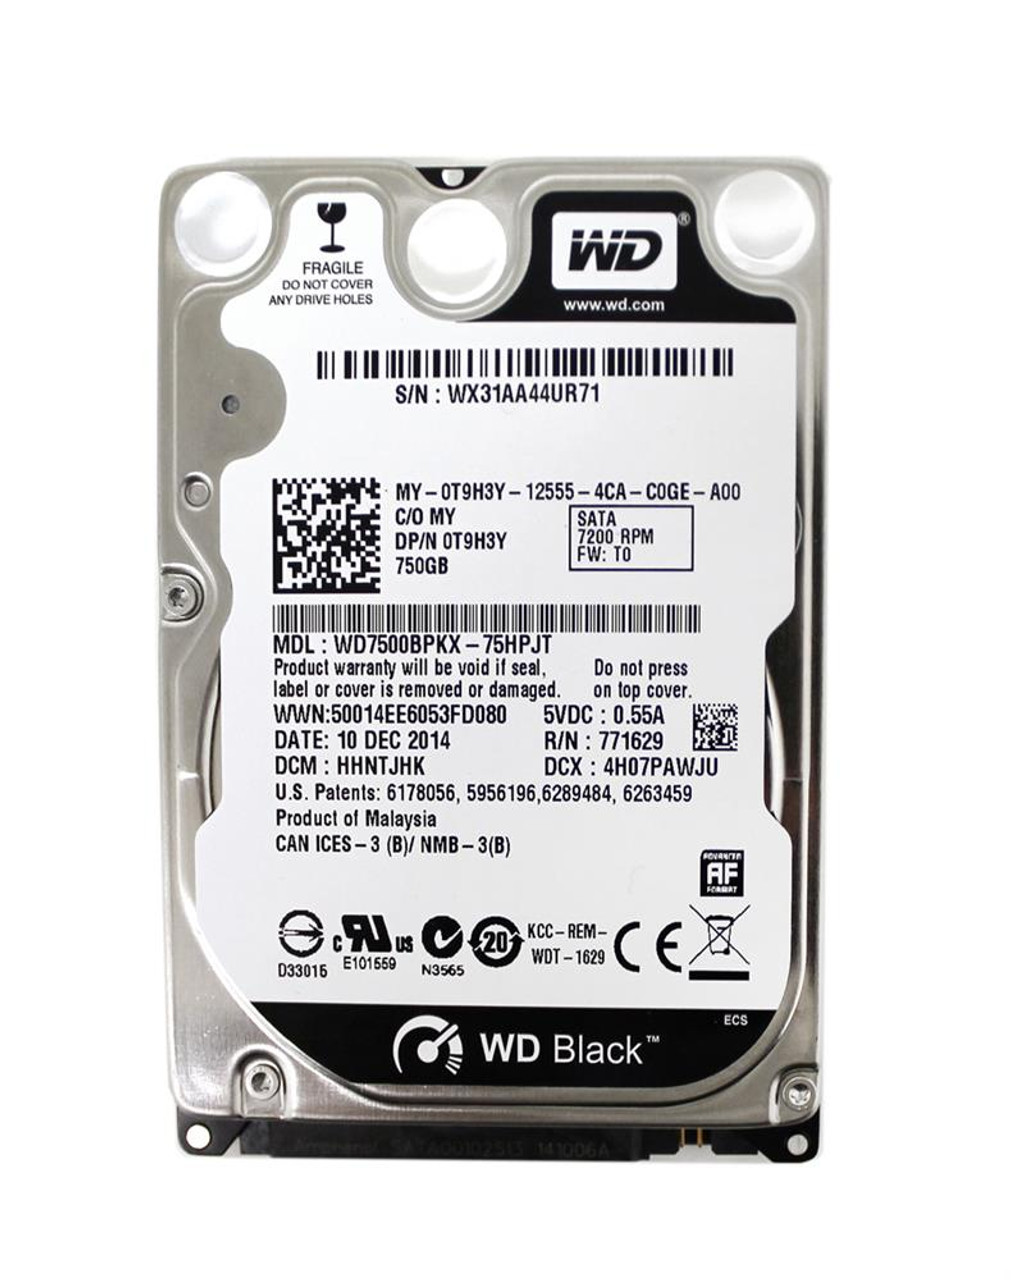 WD7500BPKX-75HPJT Western Digital Black 750GB 7200RPM SATA 6Gbps 16MB Cache 2.5-inch Internal Hard Drive